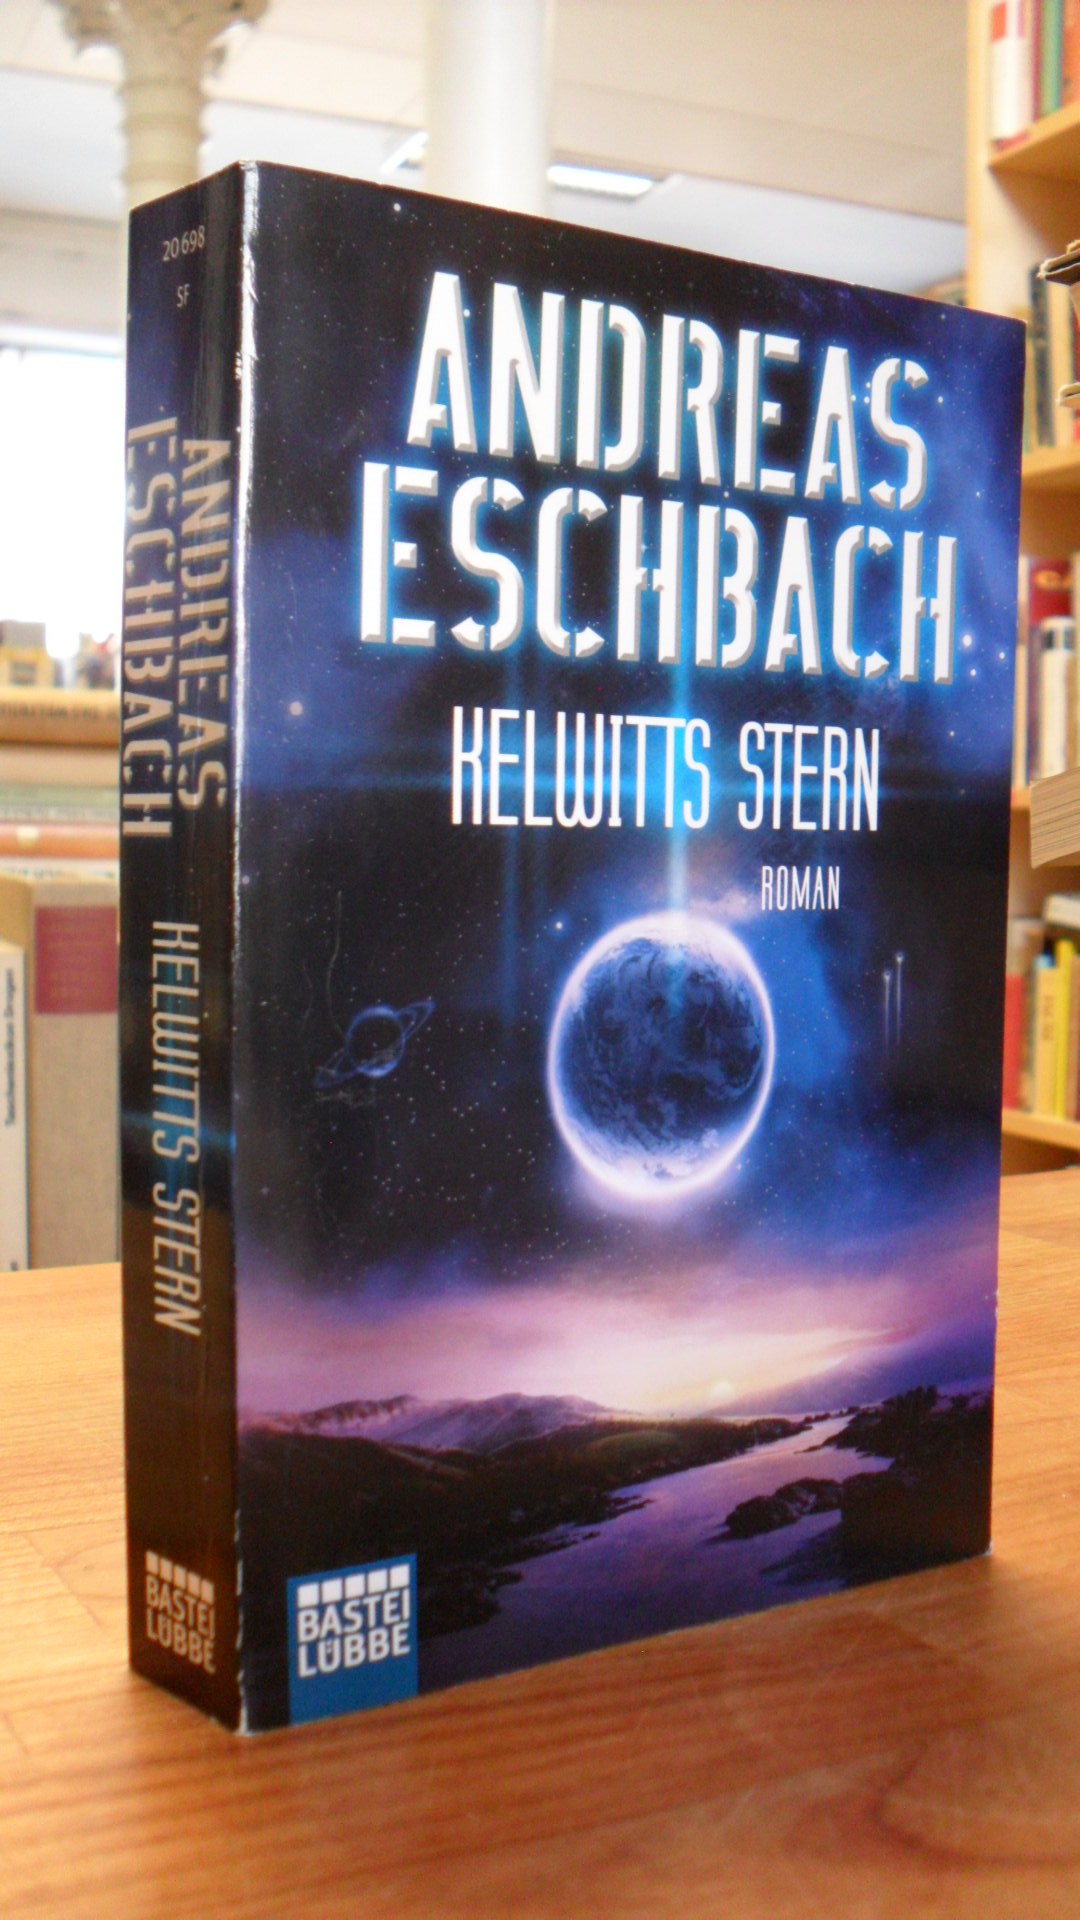 Eschbach, Kelwitts Stern – Roman,